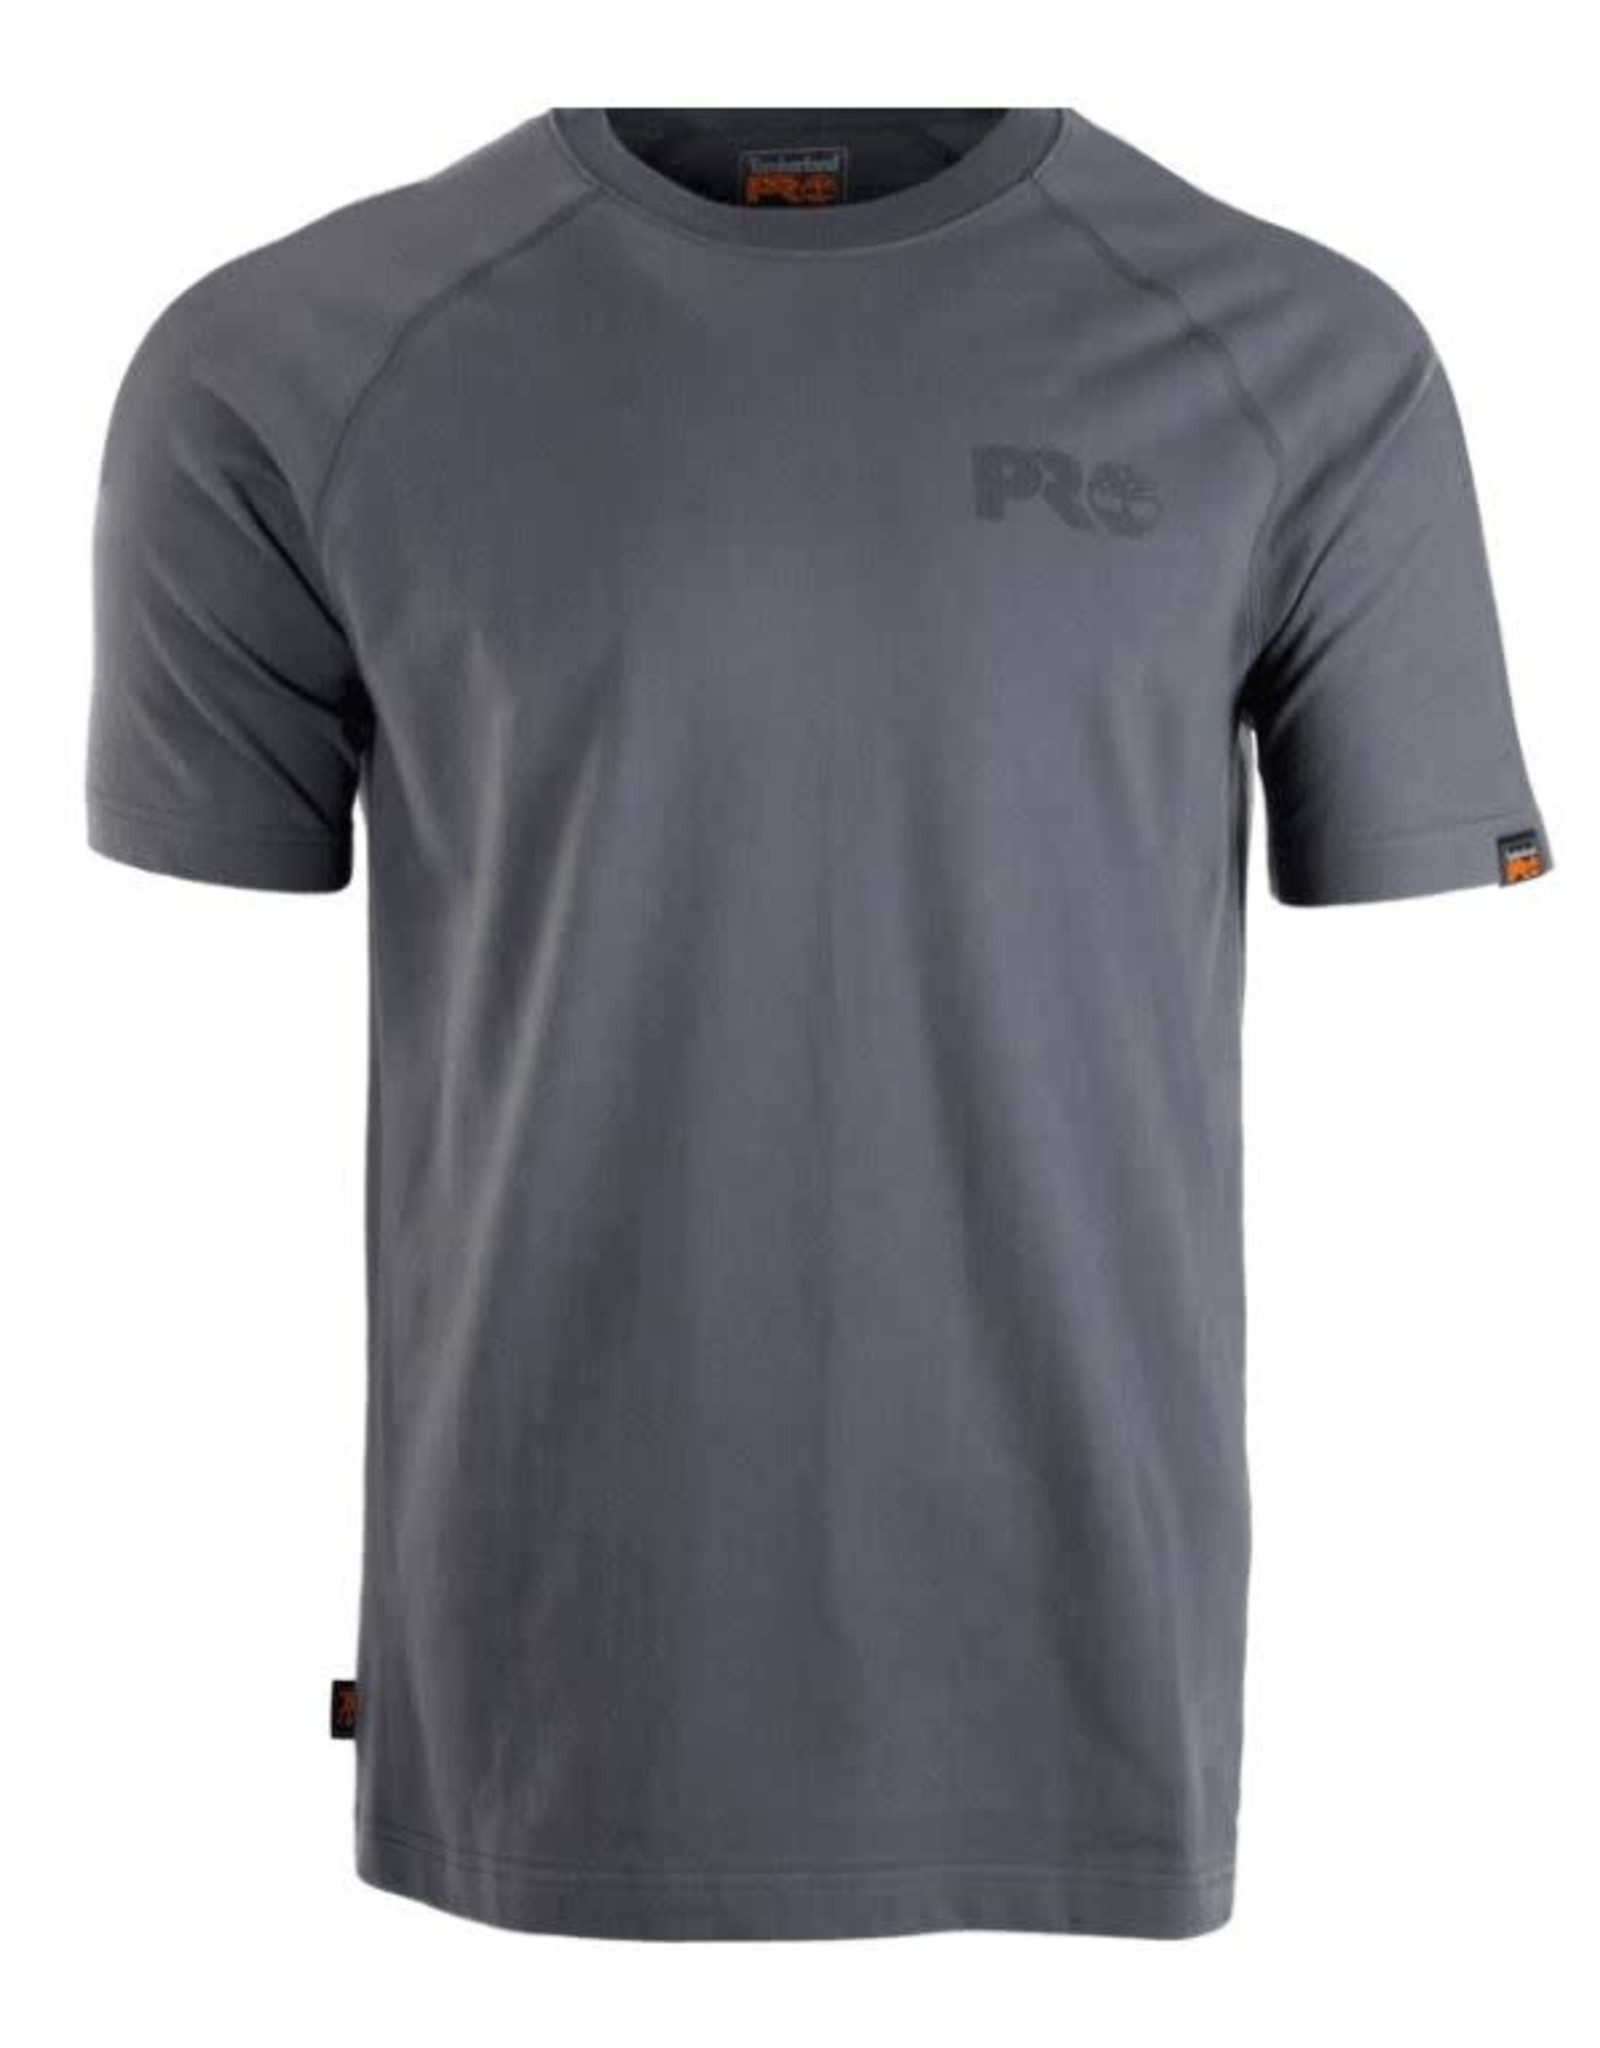 Timberland PRO Core Reflective T-Shirt